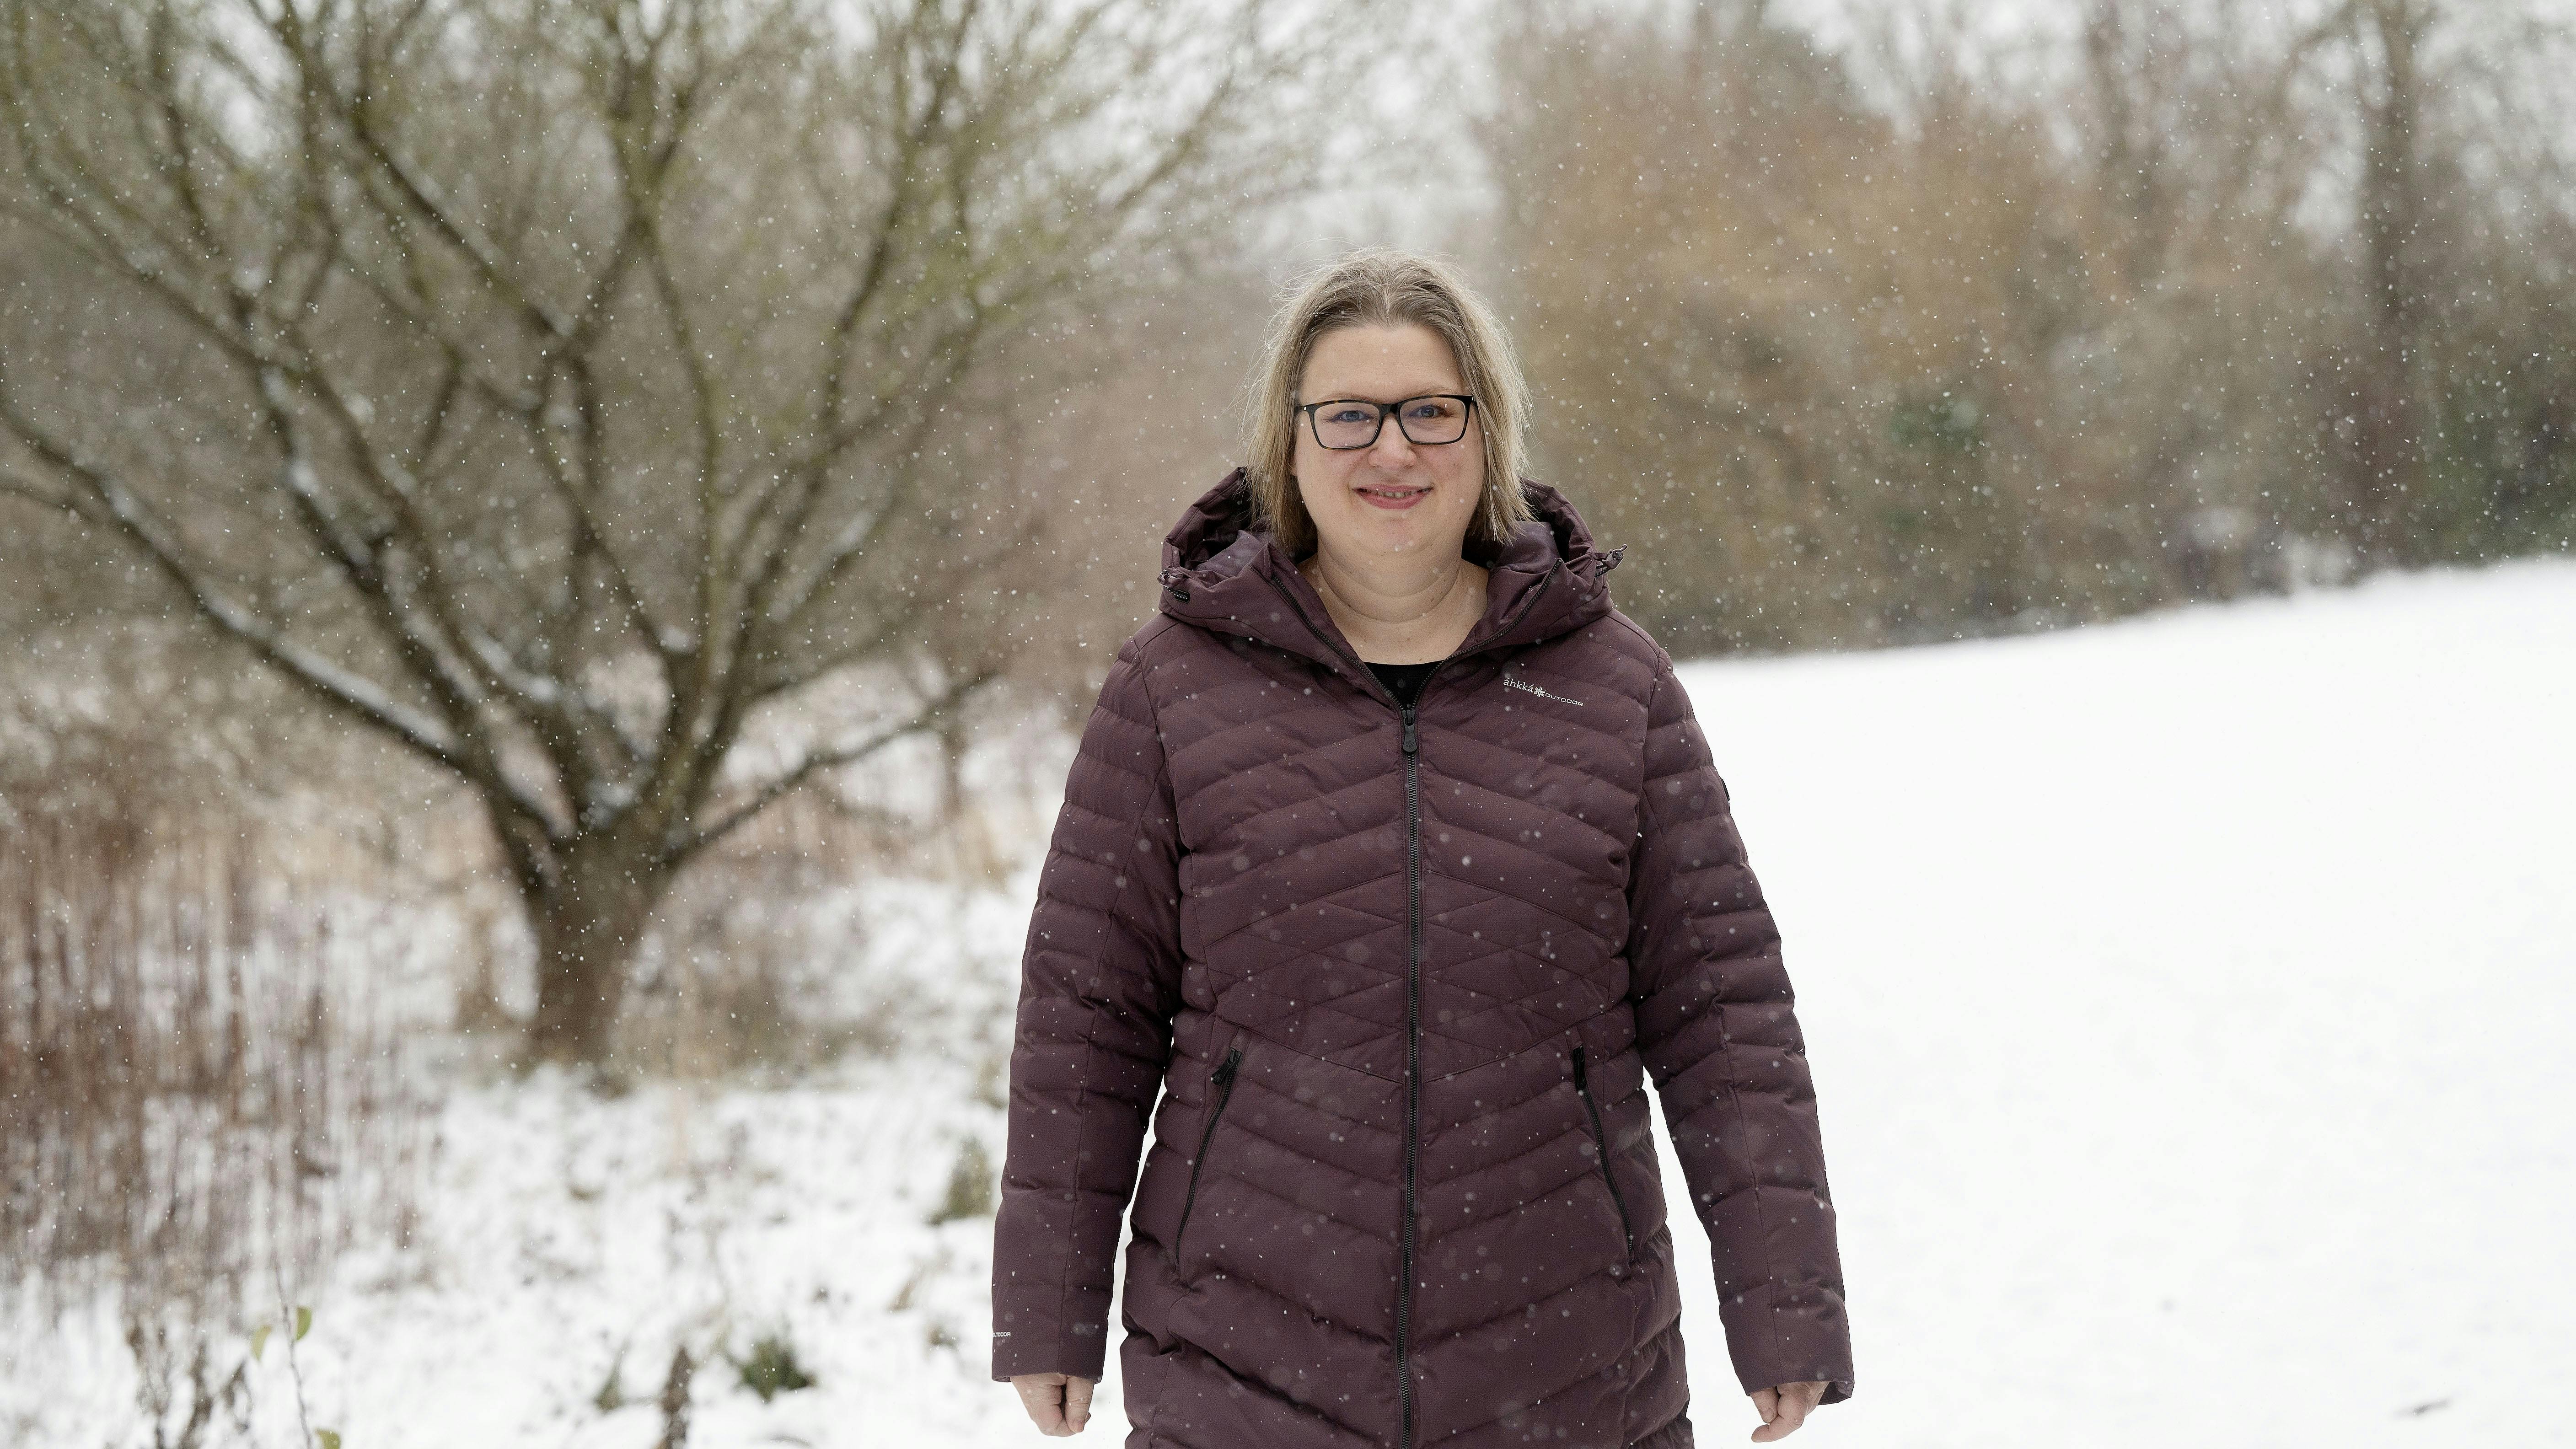  45-årige Mette Bastholm på en gåtur i et snedækket landskab.